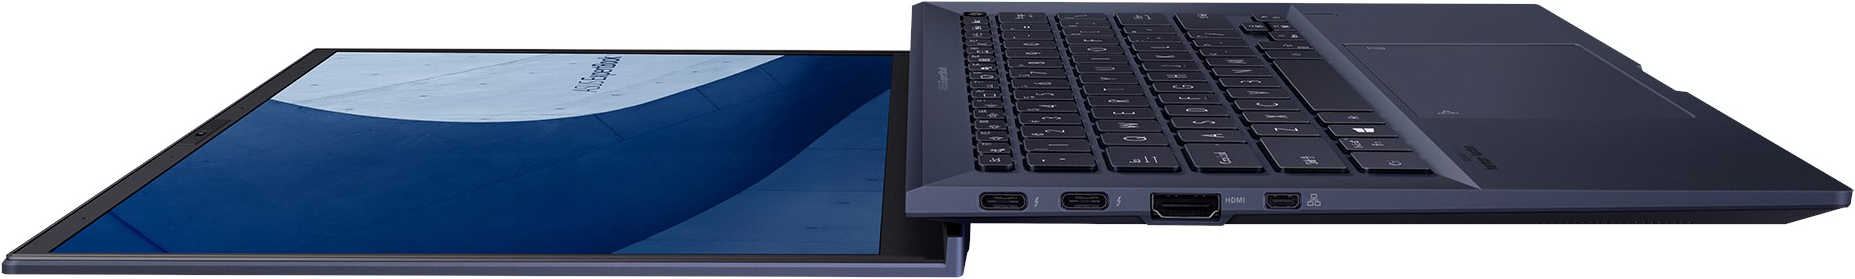 Asus ExpertBook B9 B9450